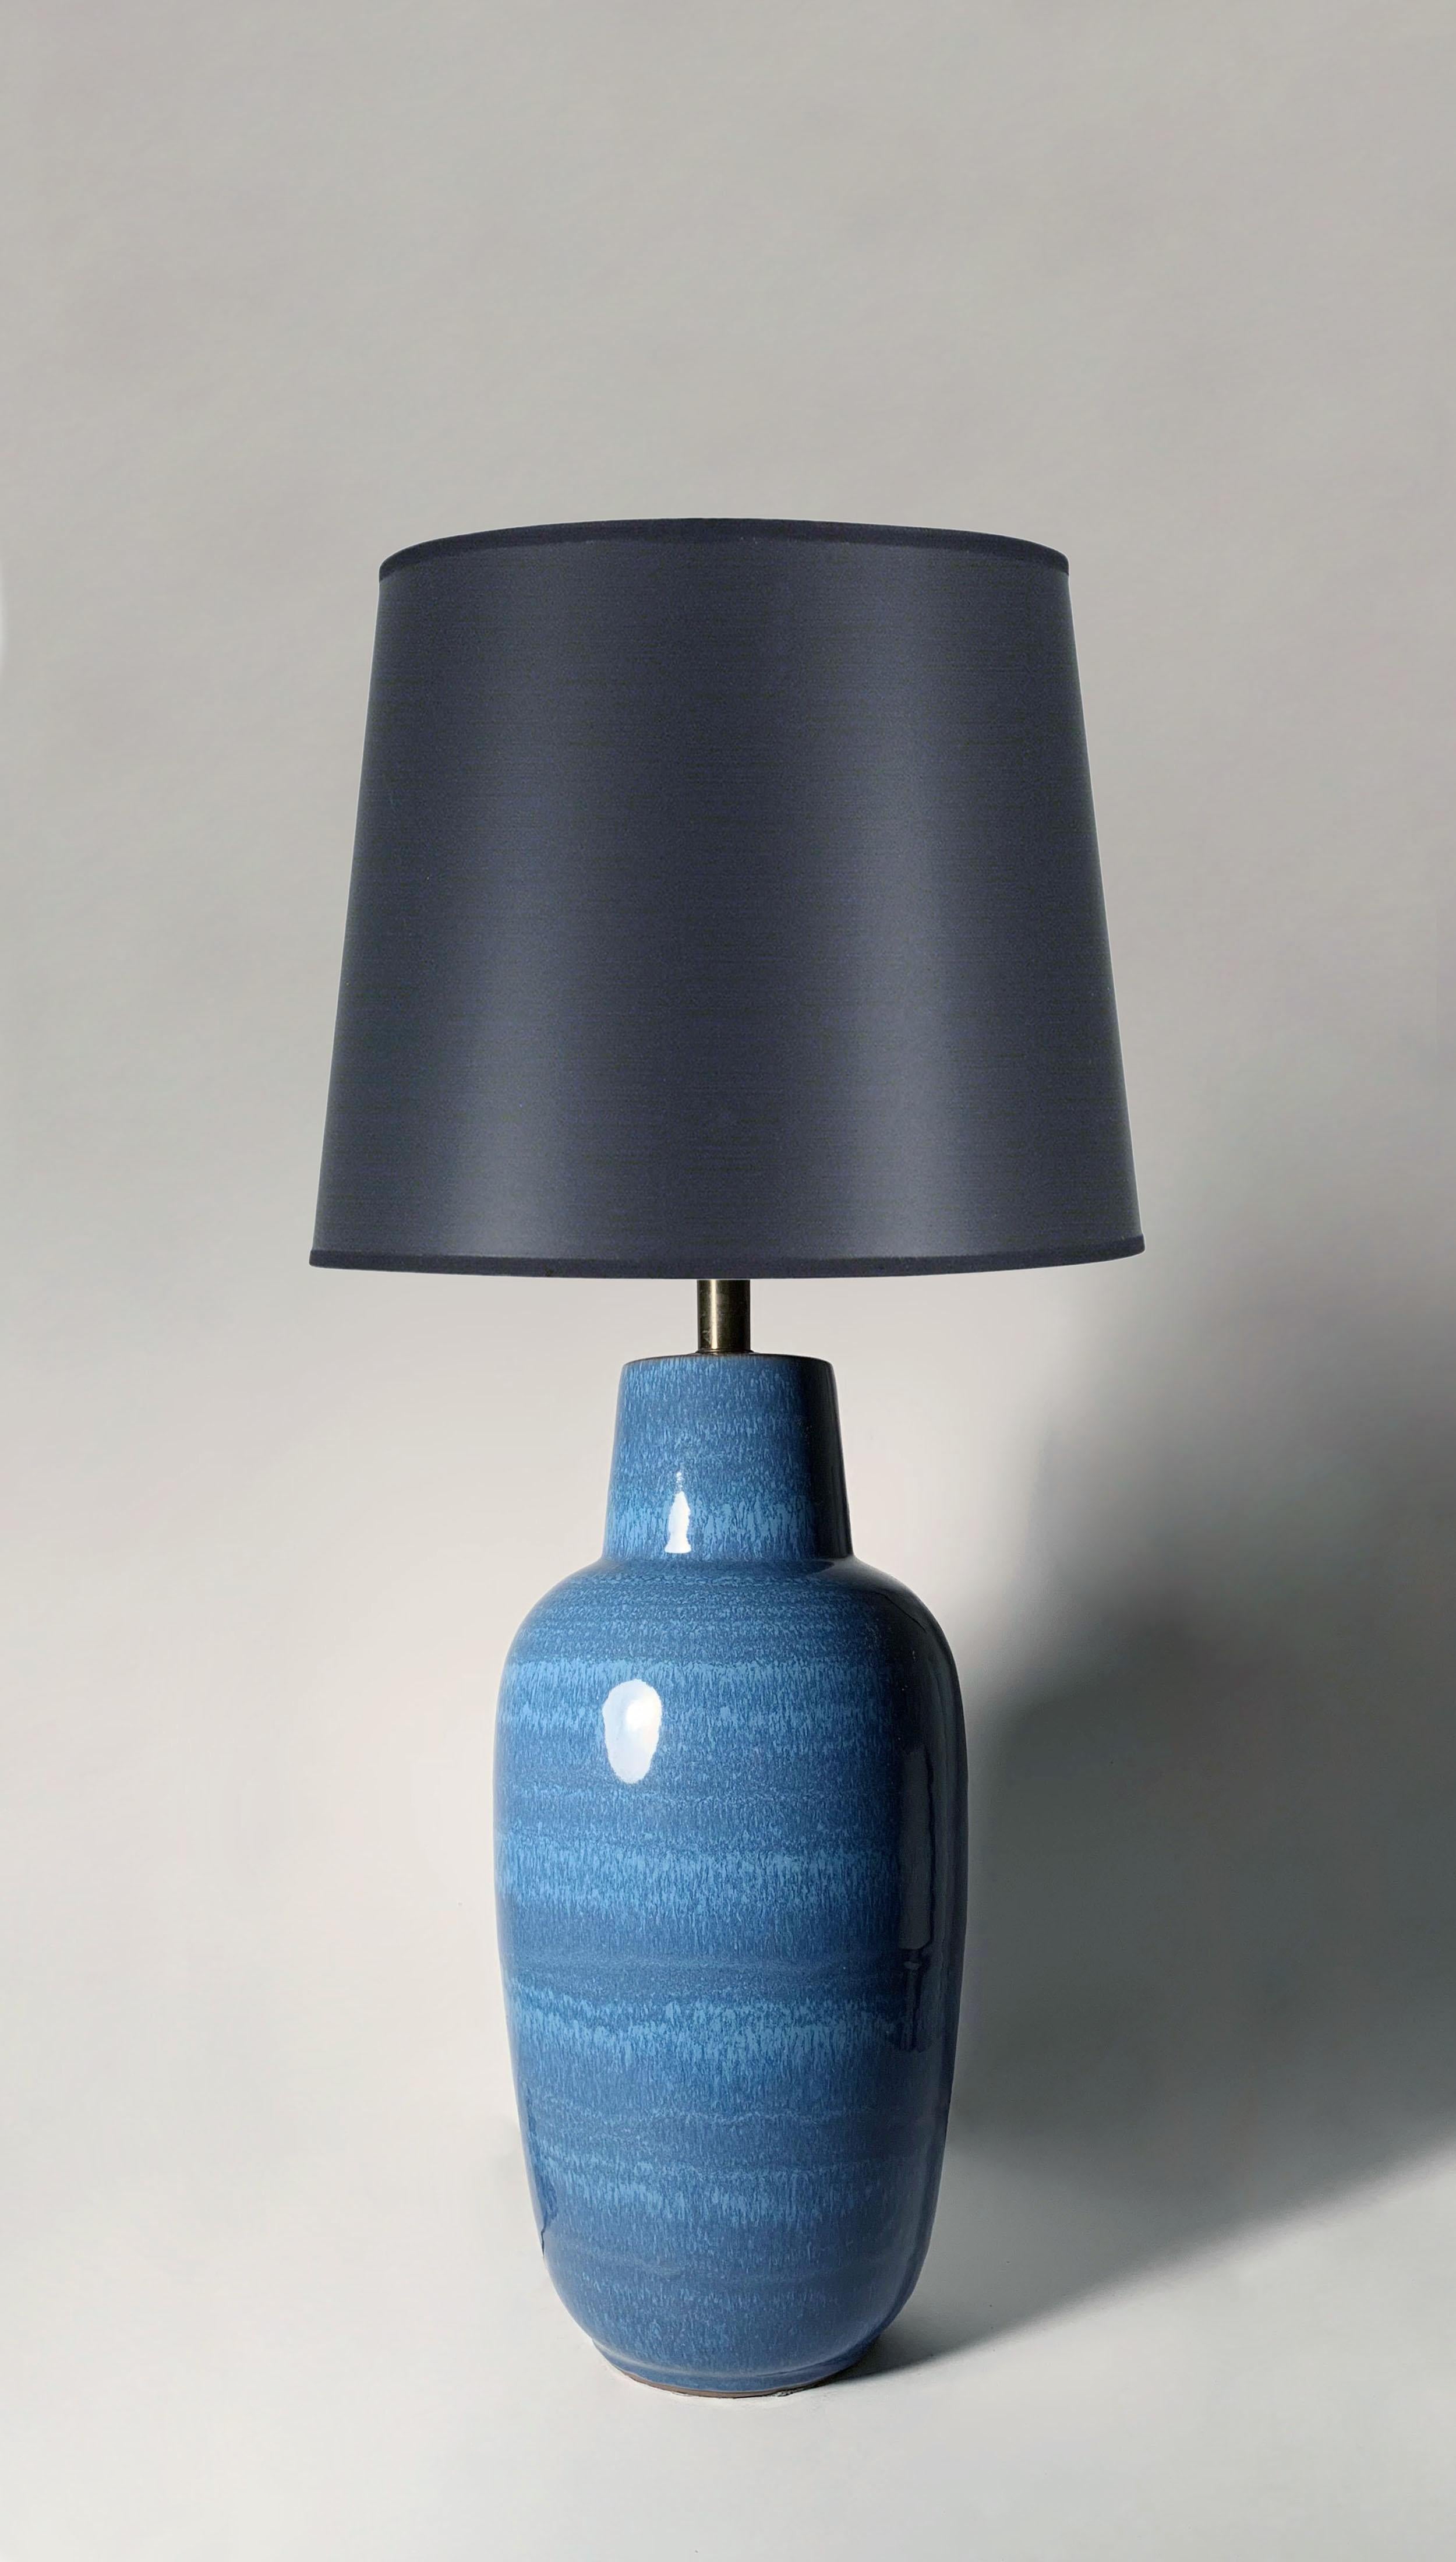 Vintage-Tischlampe aus Keramik/Keramik von Lee Rosen für Design Technics. Schöne blaue Tropfglasur auf diesem Exemplar.

24